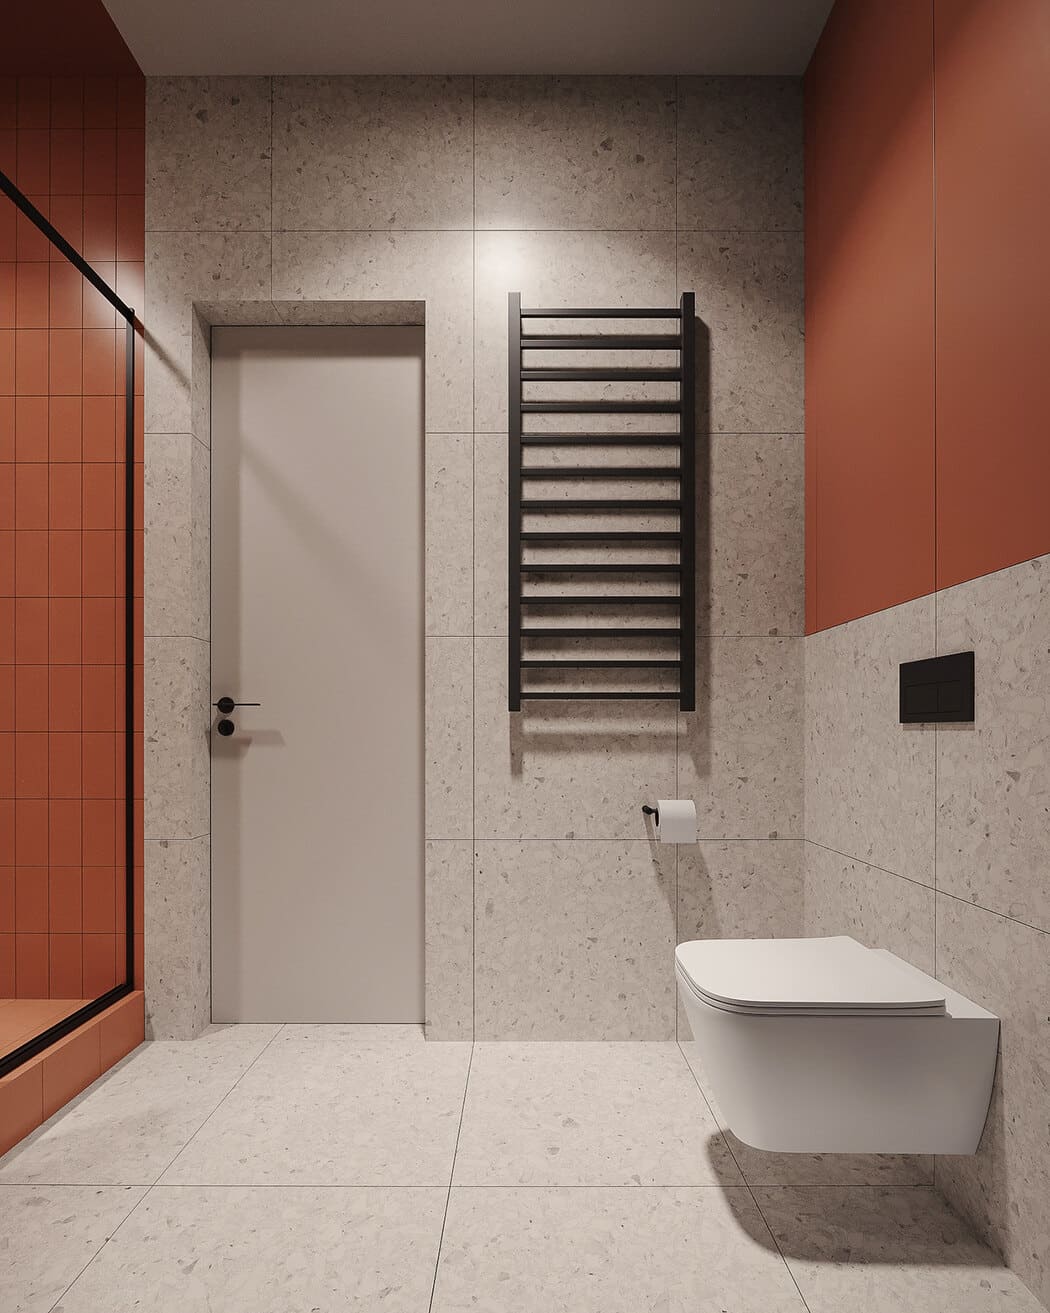 Минималистичная квартира с контрастными акцентами в стиле минимализма, ванная, фото 3